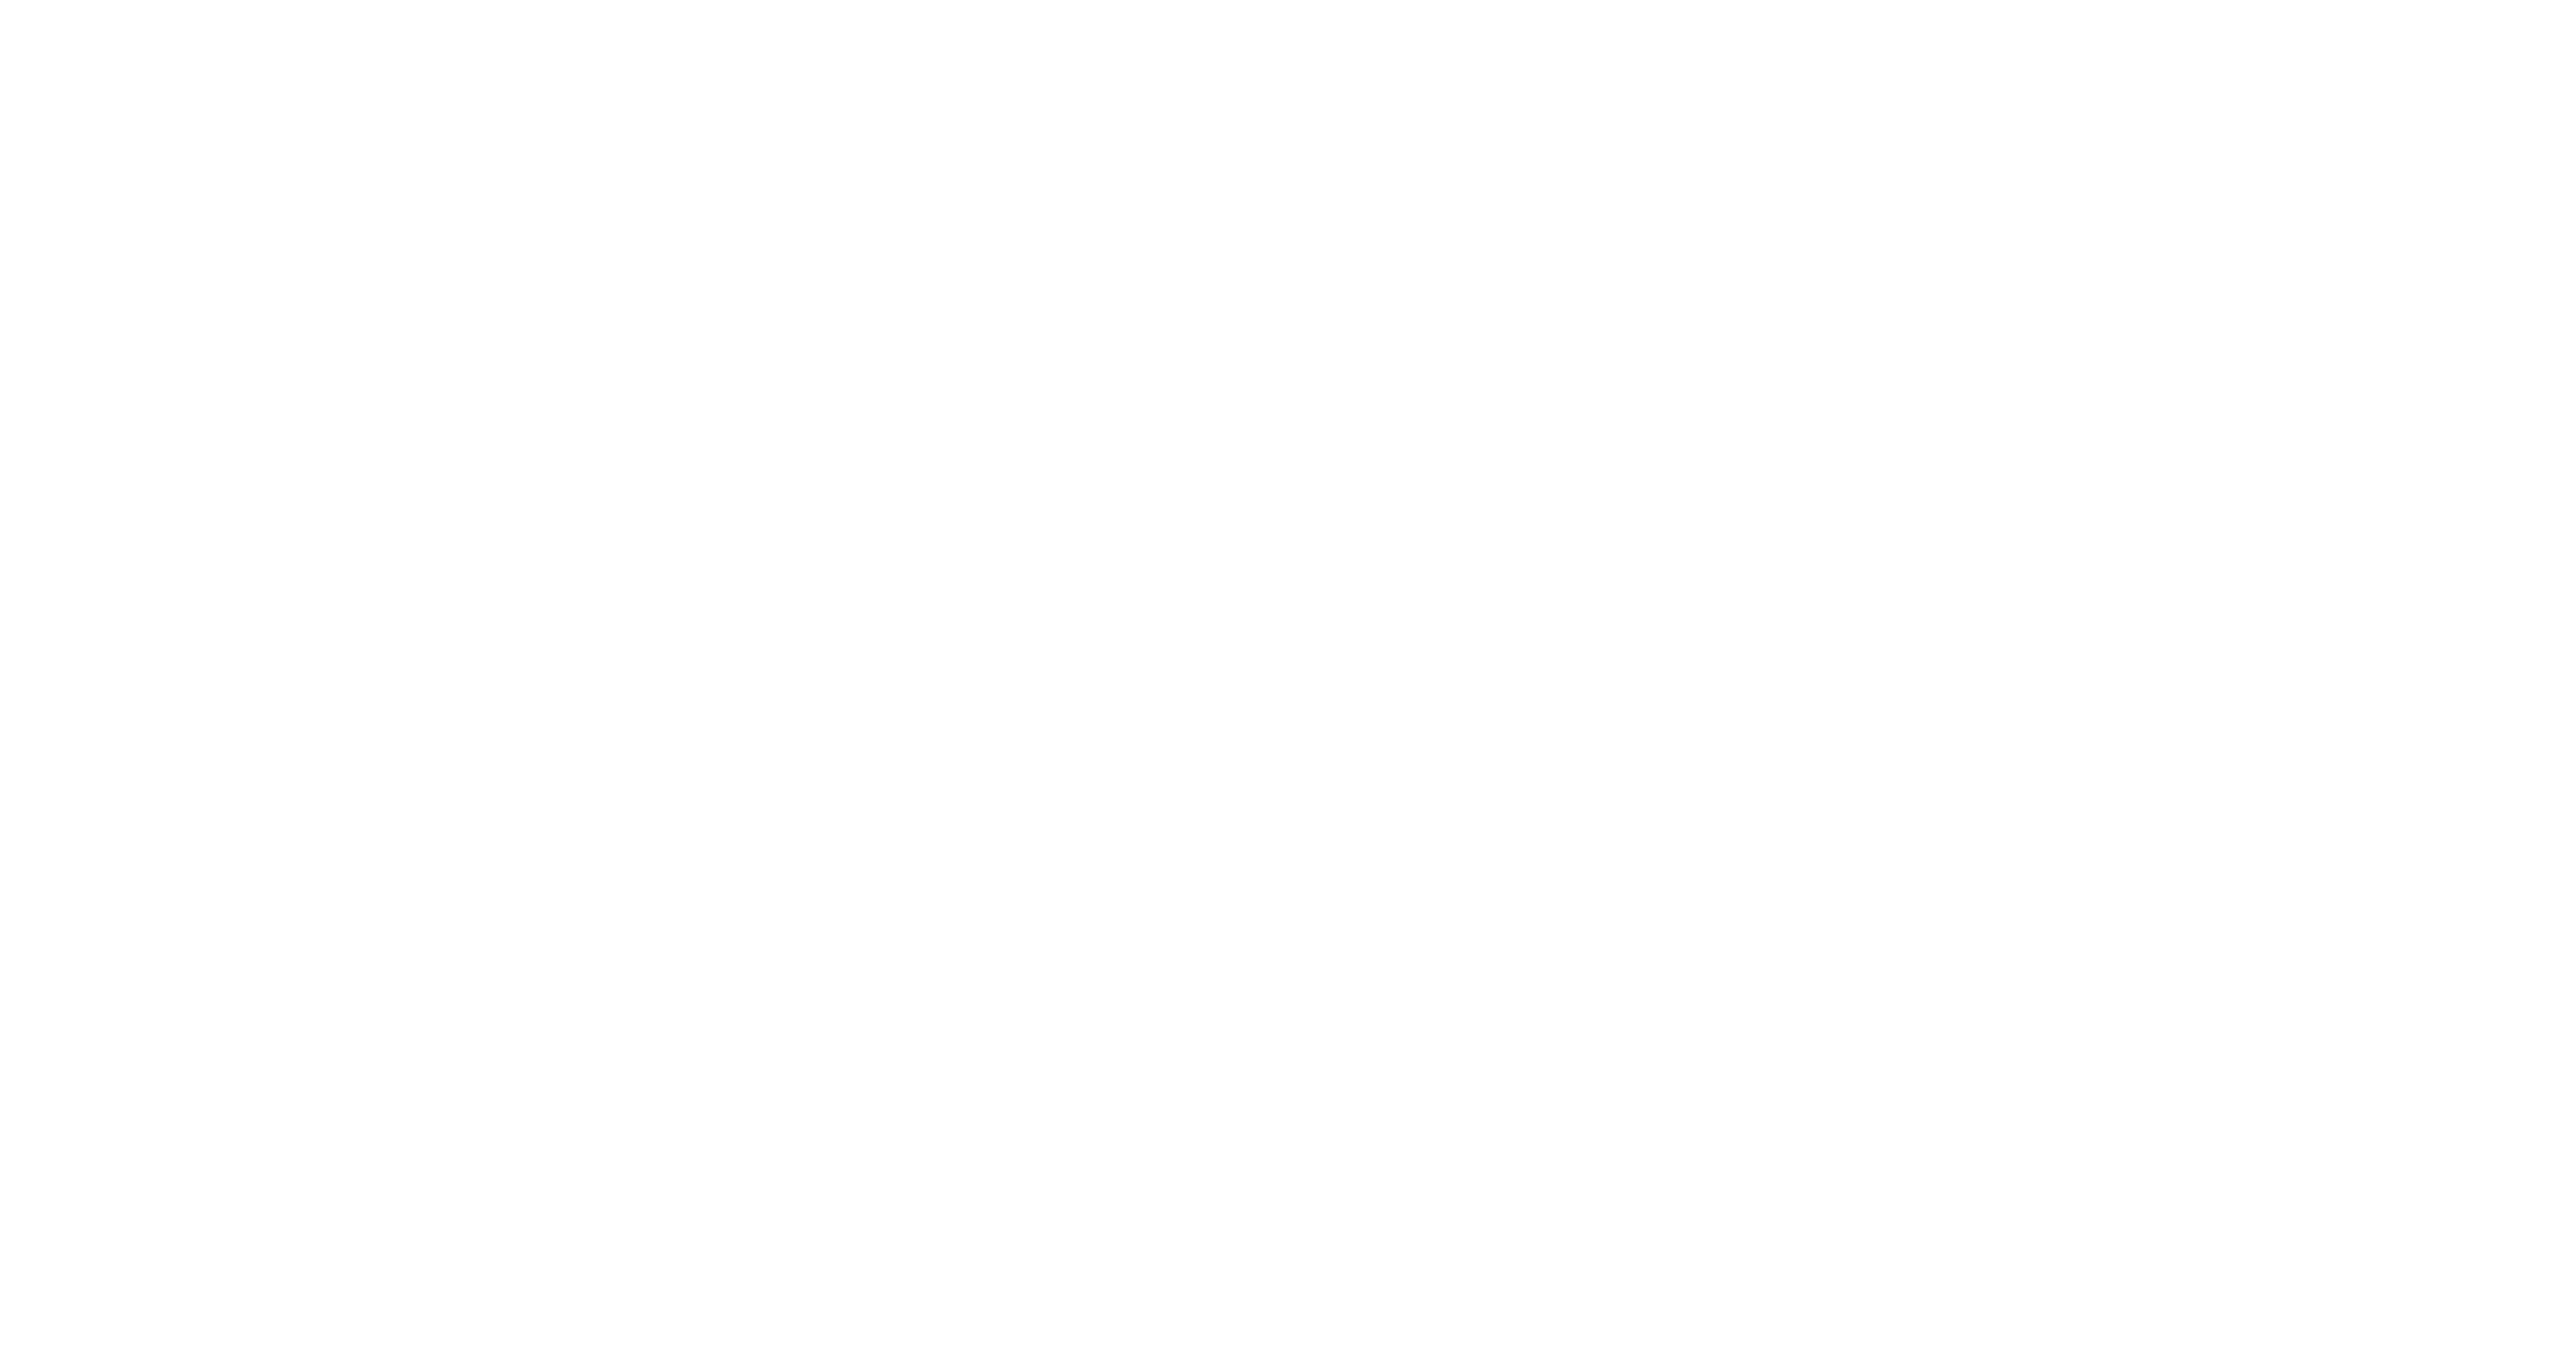 Axi Logo